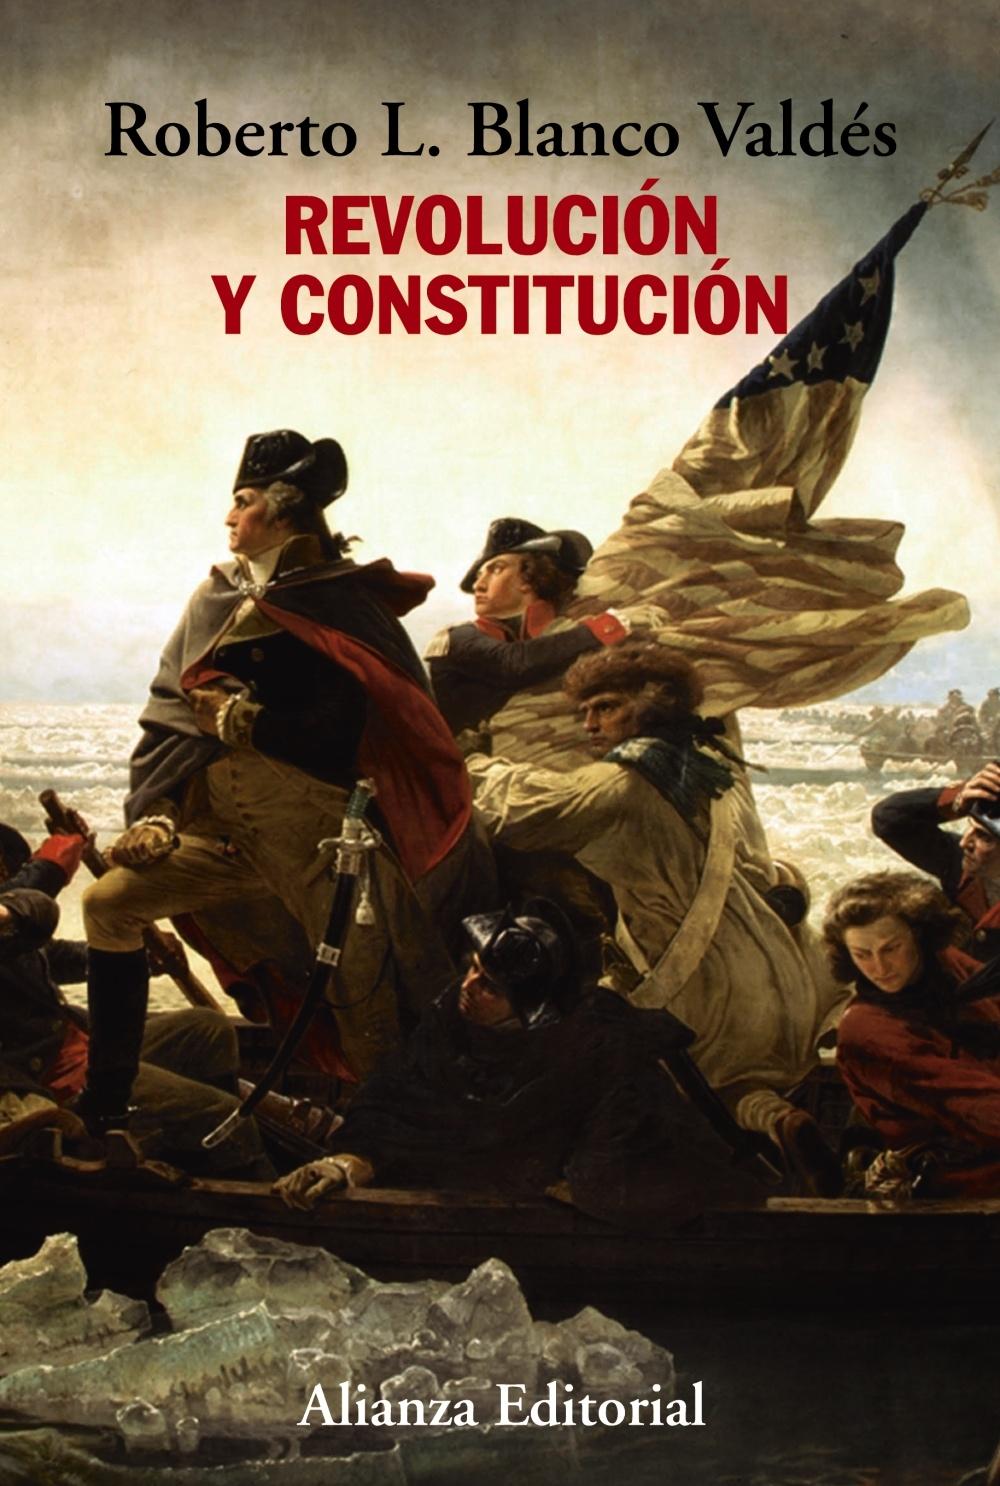 Revolución y constitución "La lucha por la independencia, los escritos de "El Federalista" y el eje"